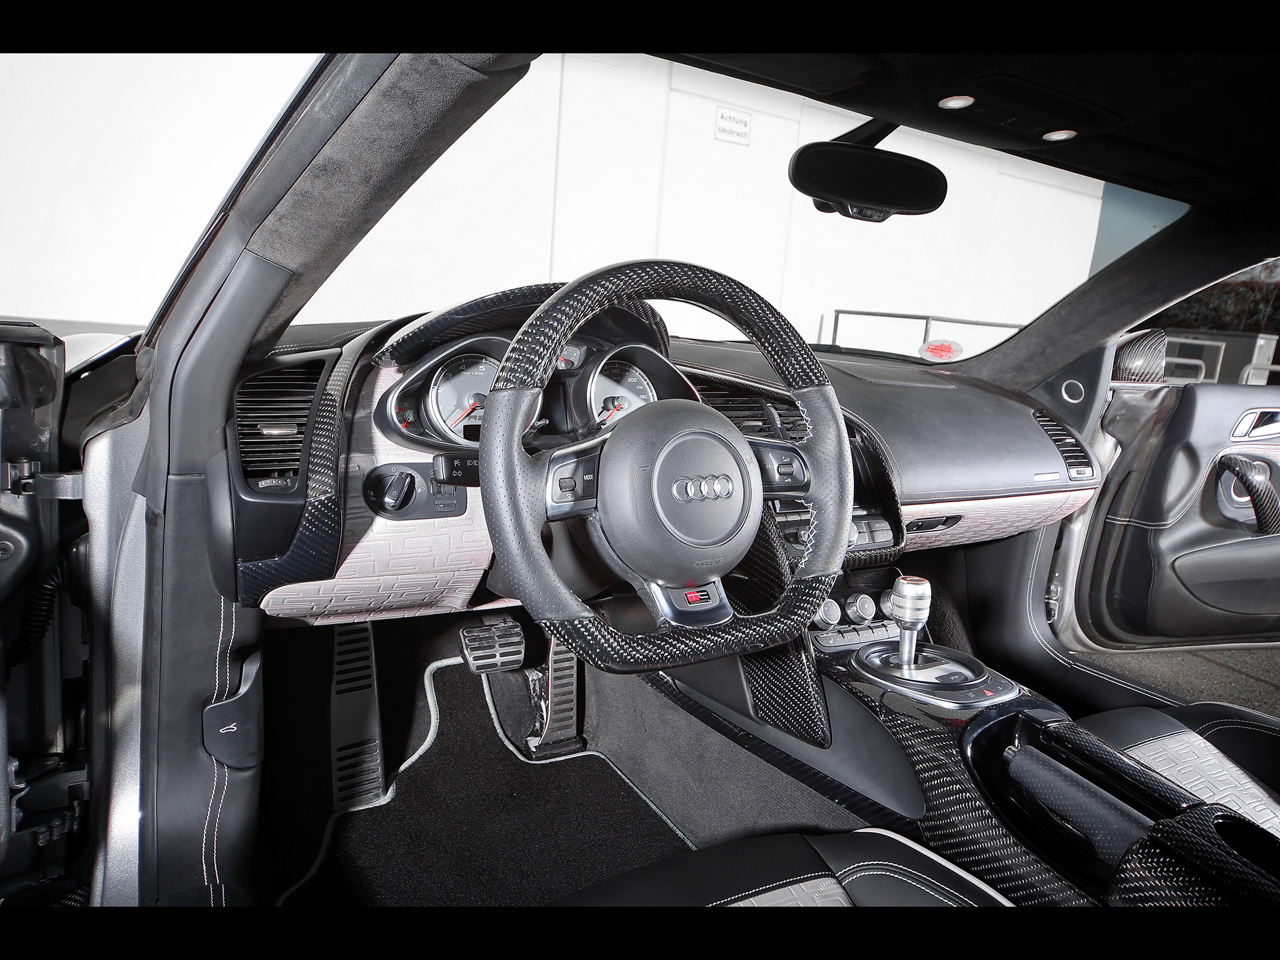 2012 TC-Concepts Audi R8 Toxique